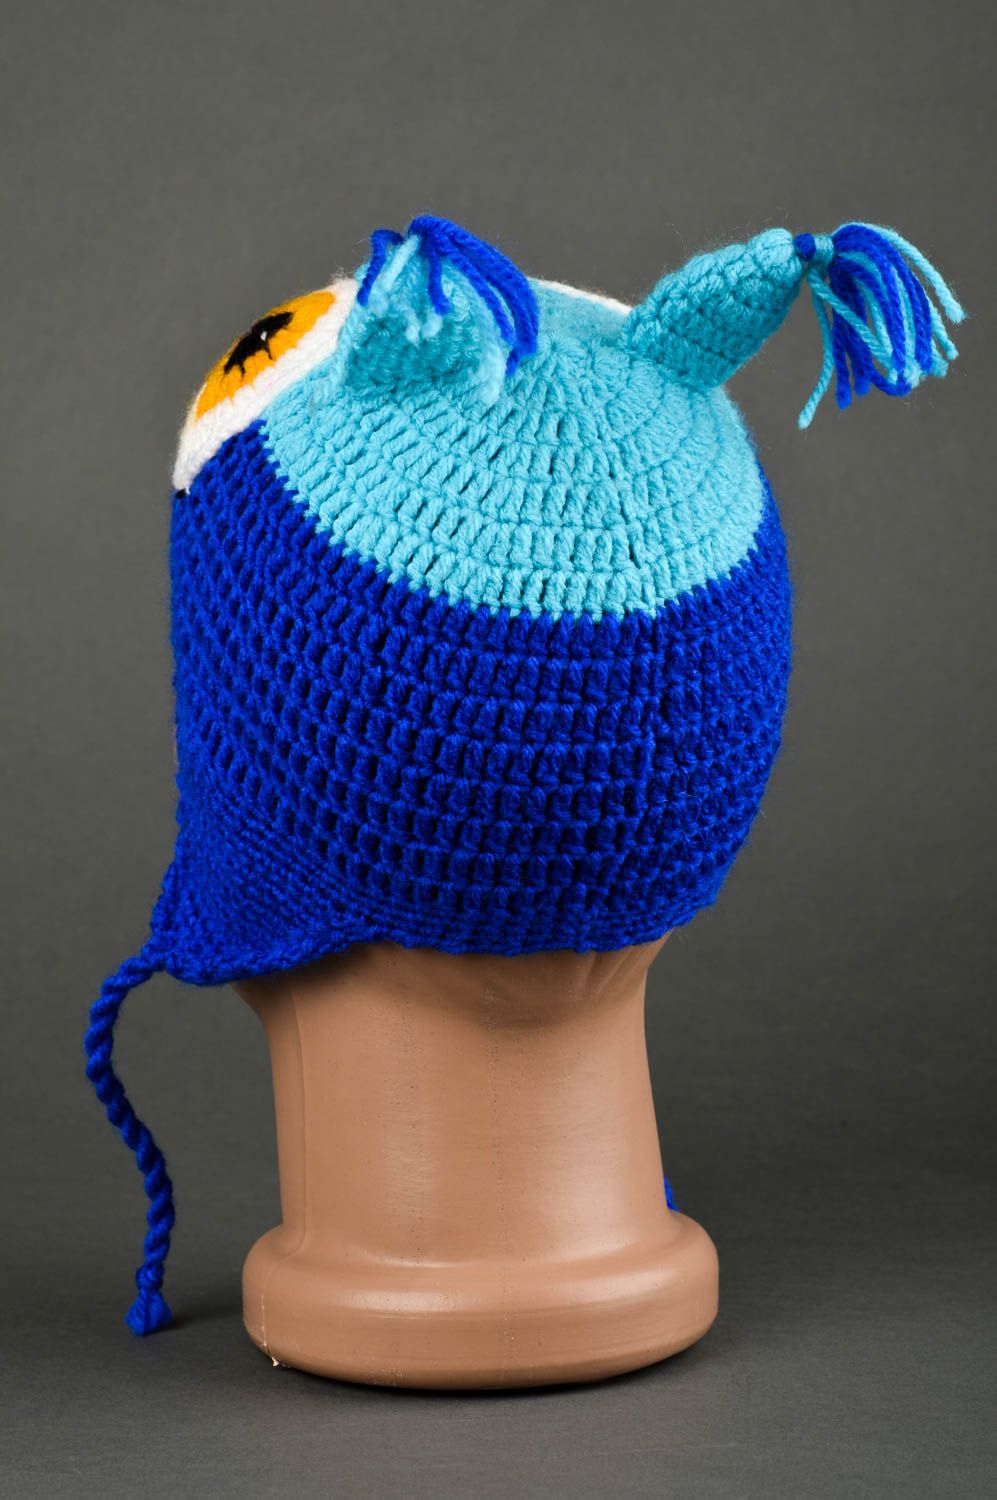 Handmade warm hat animal hat headwear for children kids accessories kids gifts photo 5